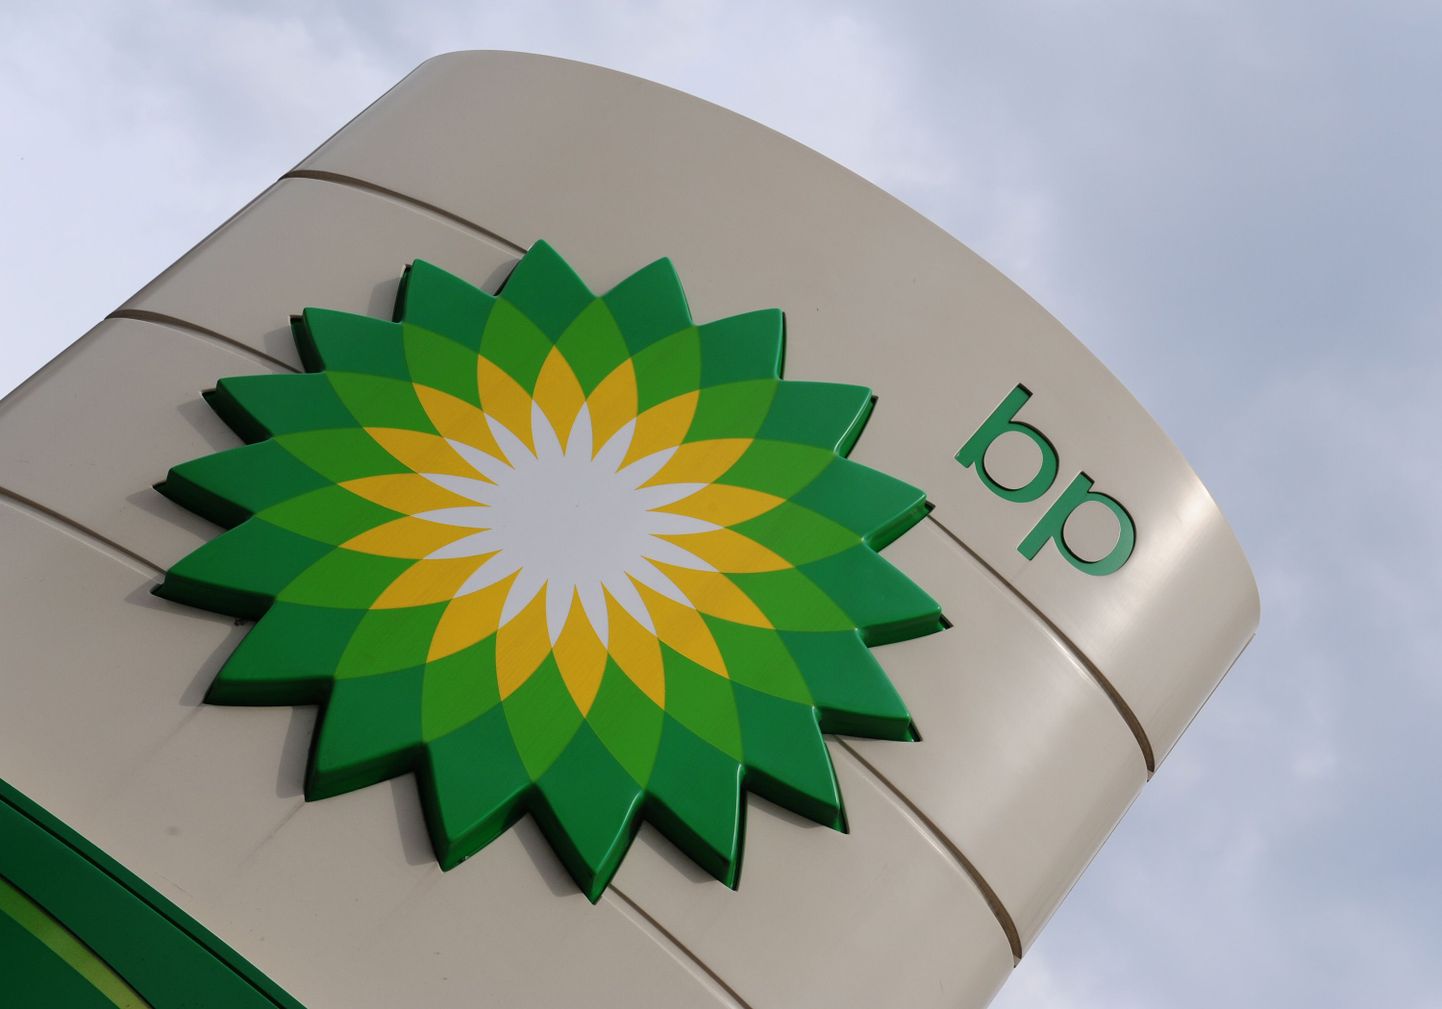 British Petroleum (BP) logo